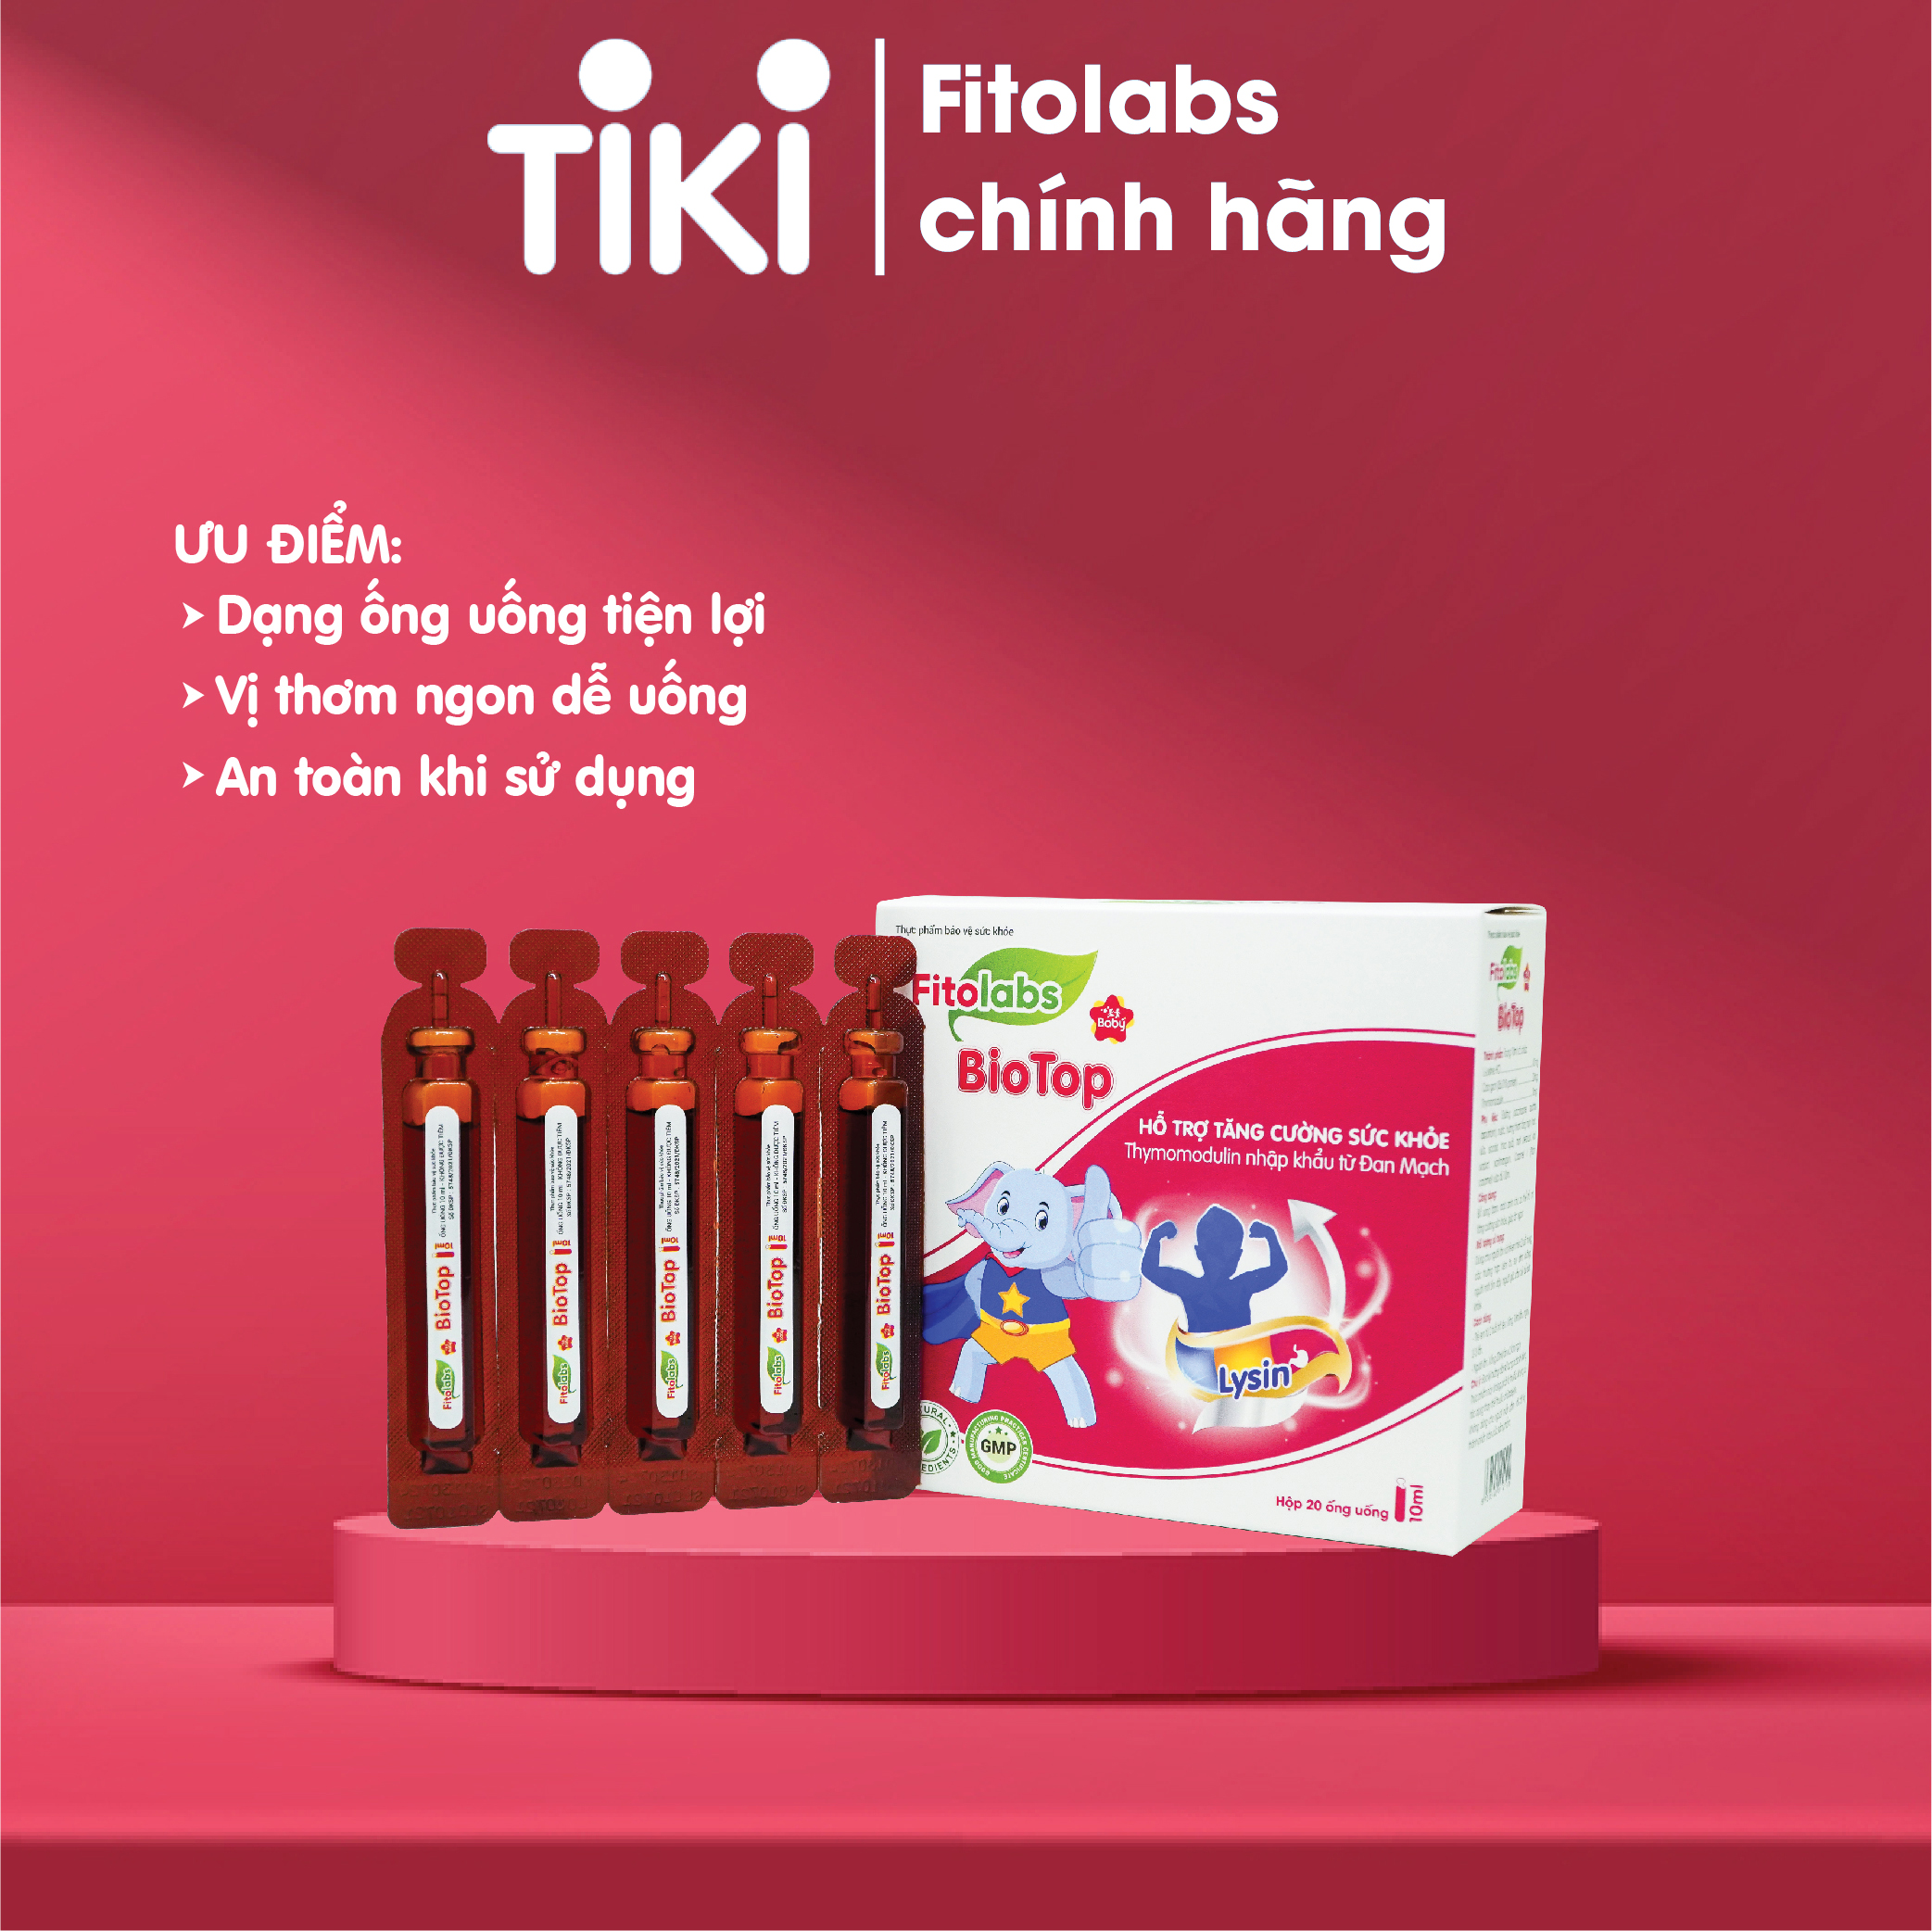 Siro dạng ống uống Fitolabs Biotop giúp bé ăn ngon, hấp thu tốt, tăng sức đề kháng